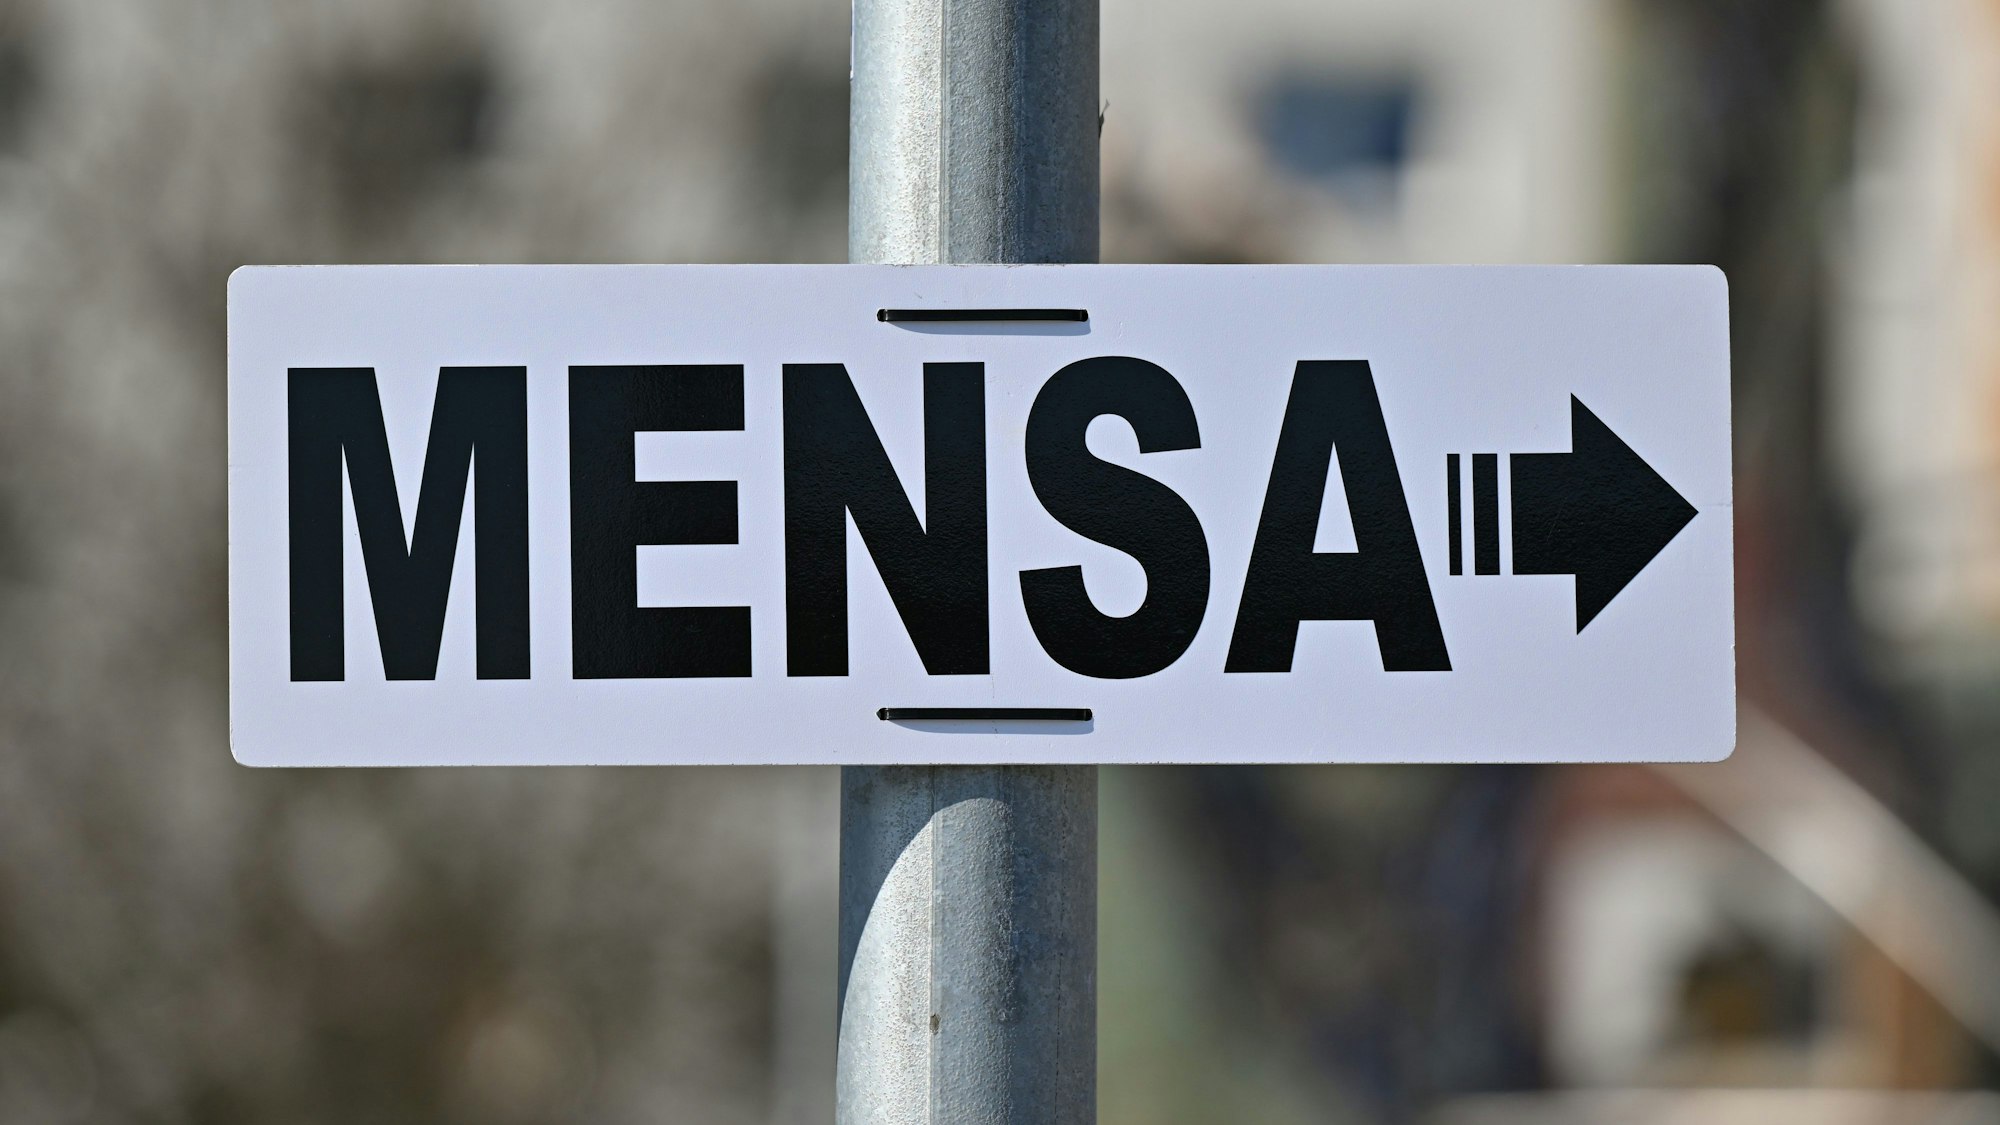 Der Mensen-Betrieb zählt zu den Aufgaben der Studierendenwerke. Zu sehen ist ein weißes Schild, auf dem "Mensa" zu lesen ist, mit einem Pfeil nach rechts.